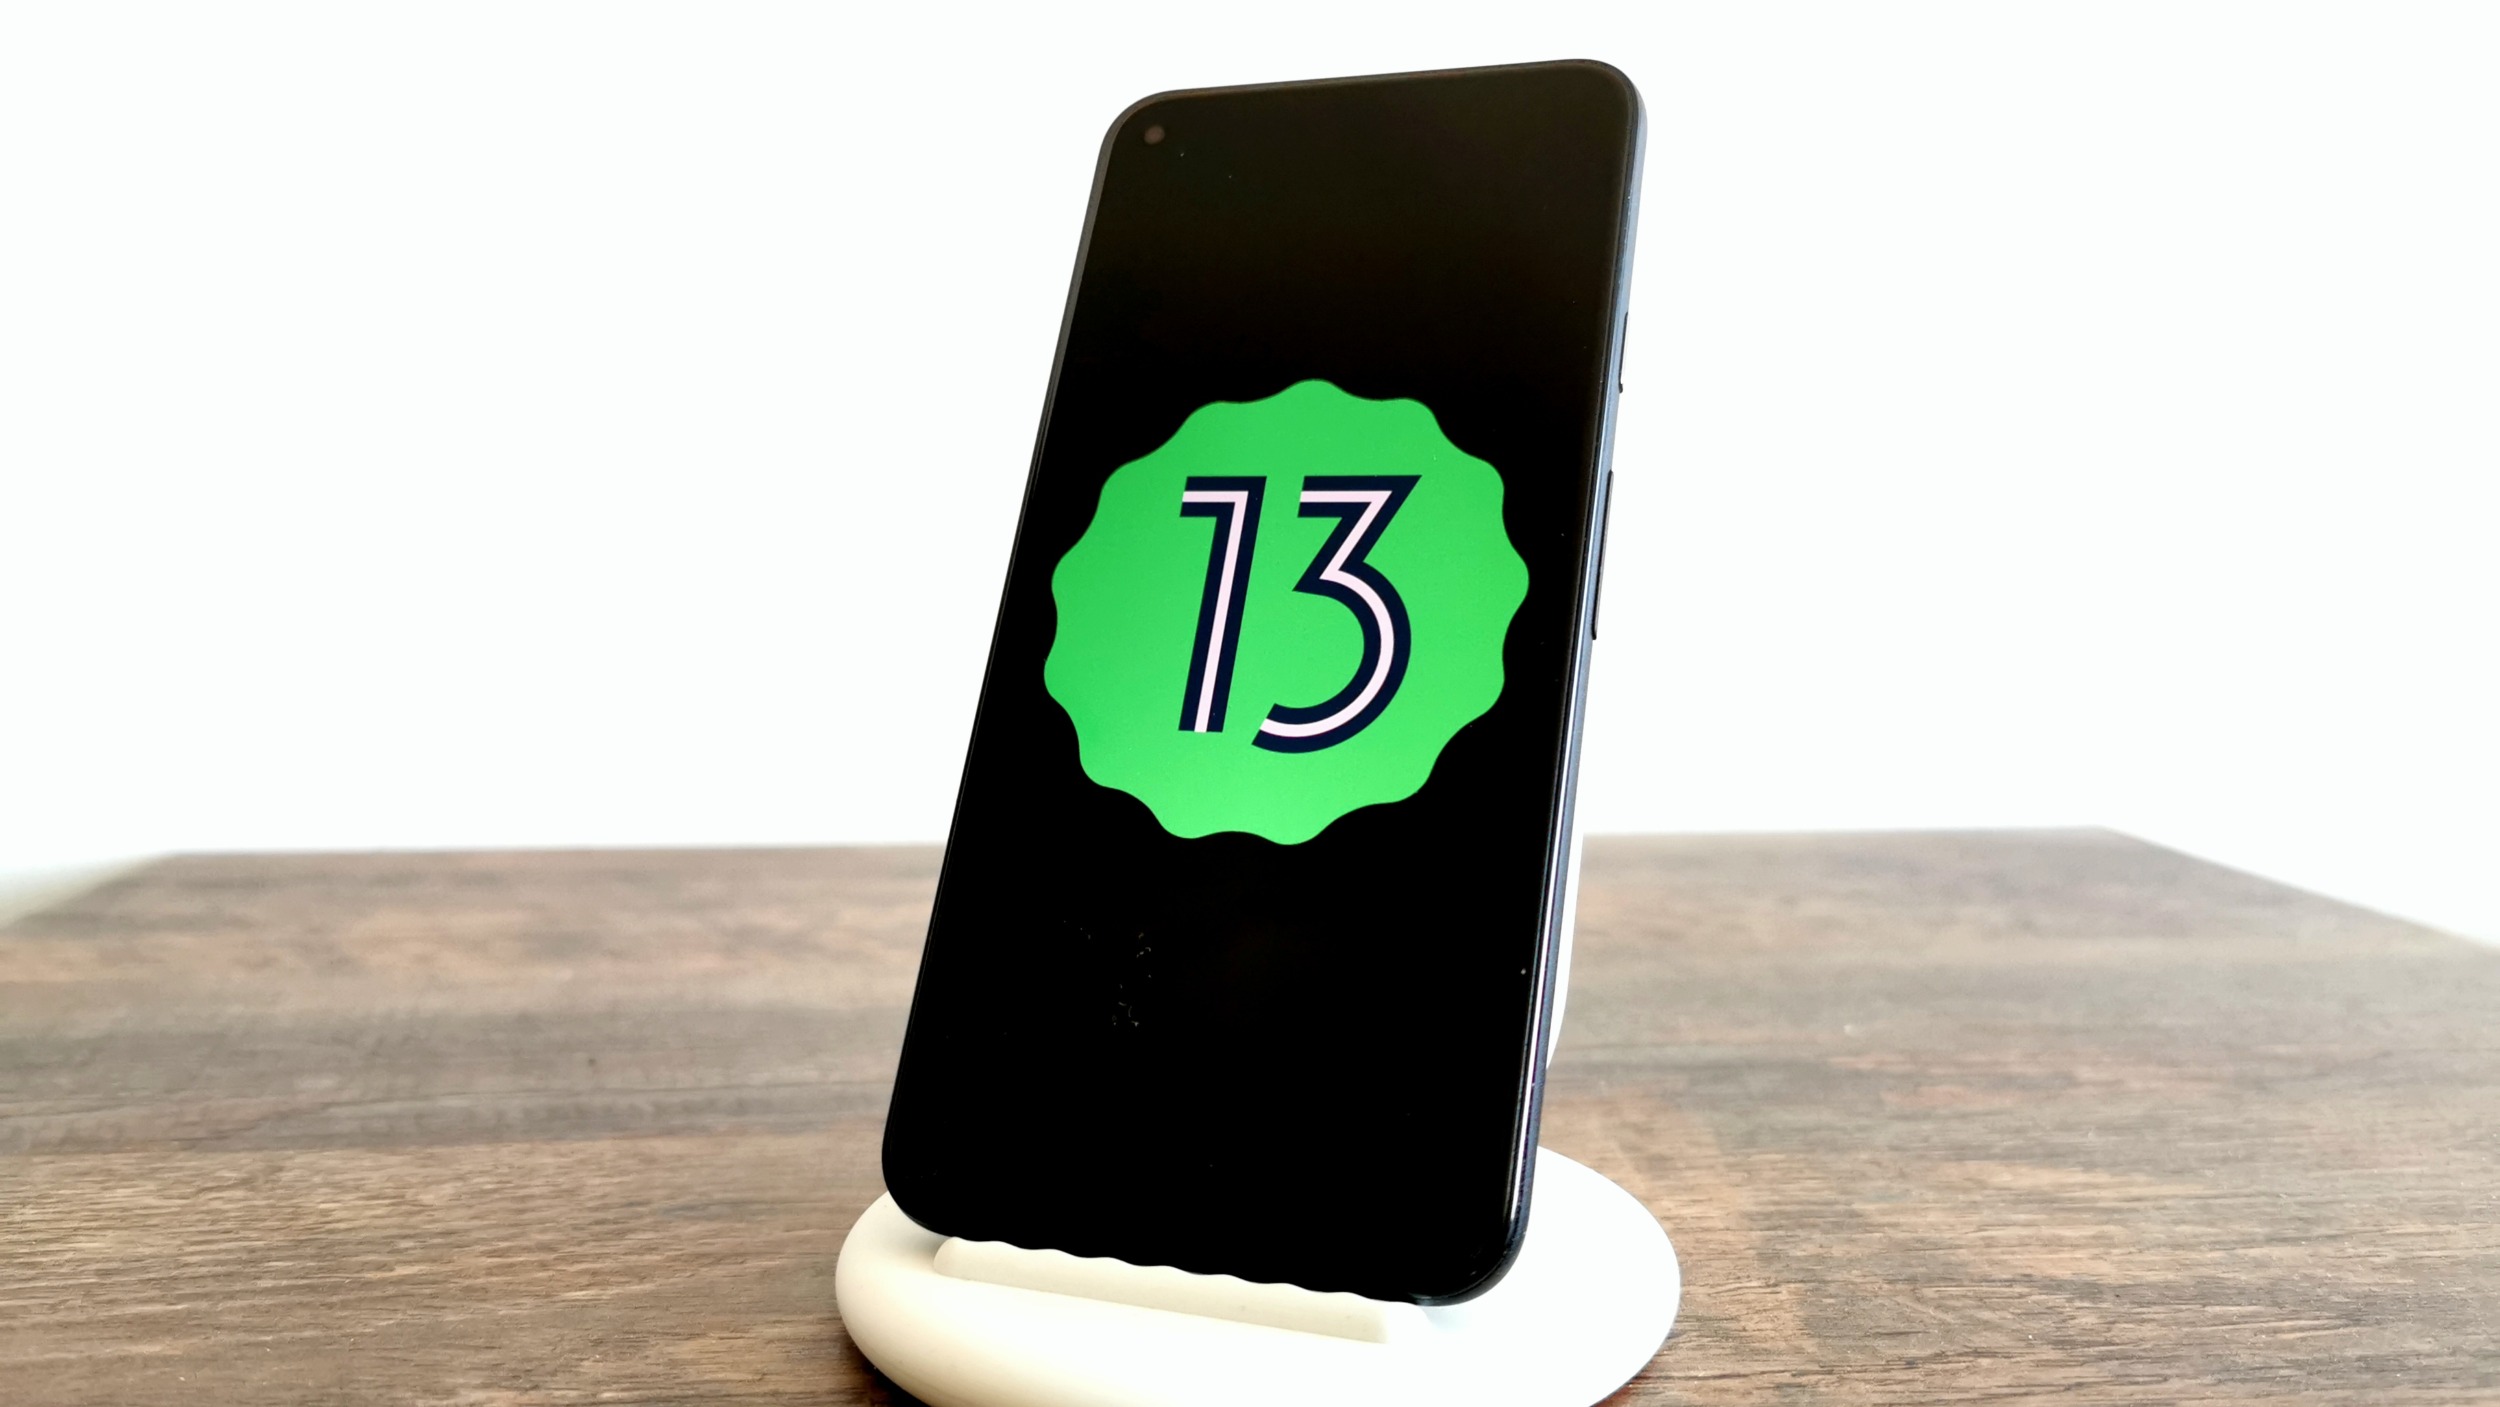 Vychází Android 13 Beta 3.3 [aktualizováno]